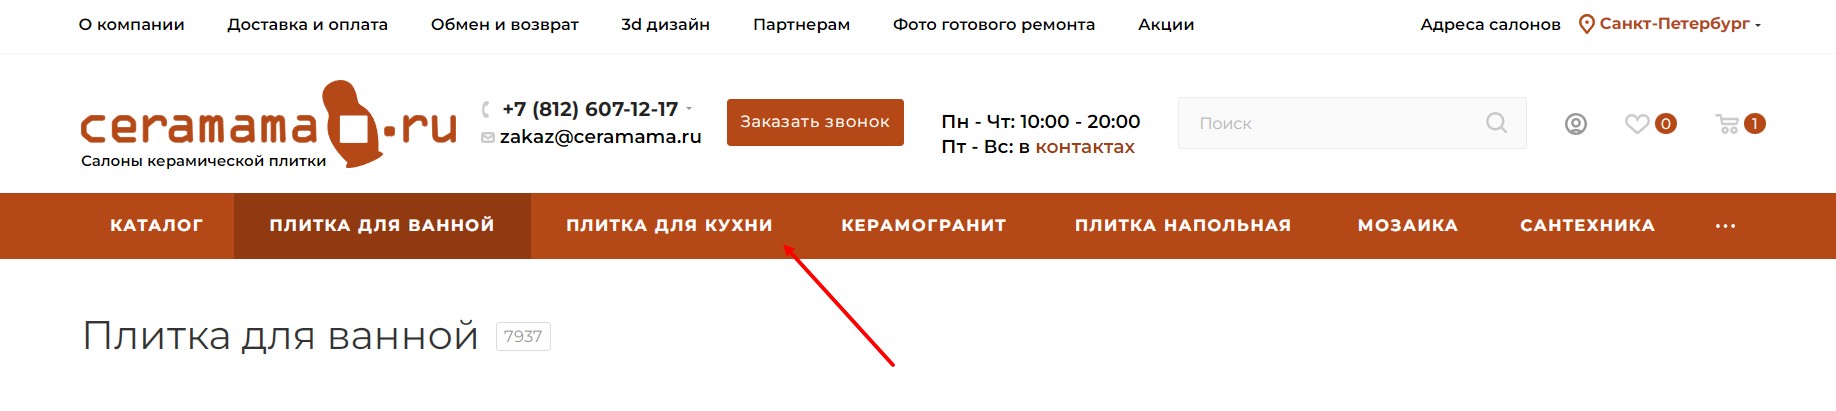 Изображение Вывод посадочных страниц с коллекциями по назначению на сайте ceramama.ru